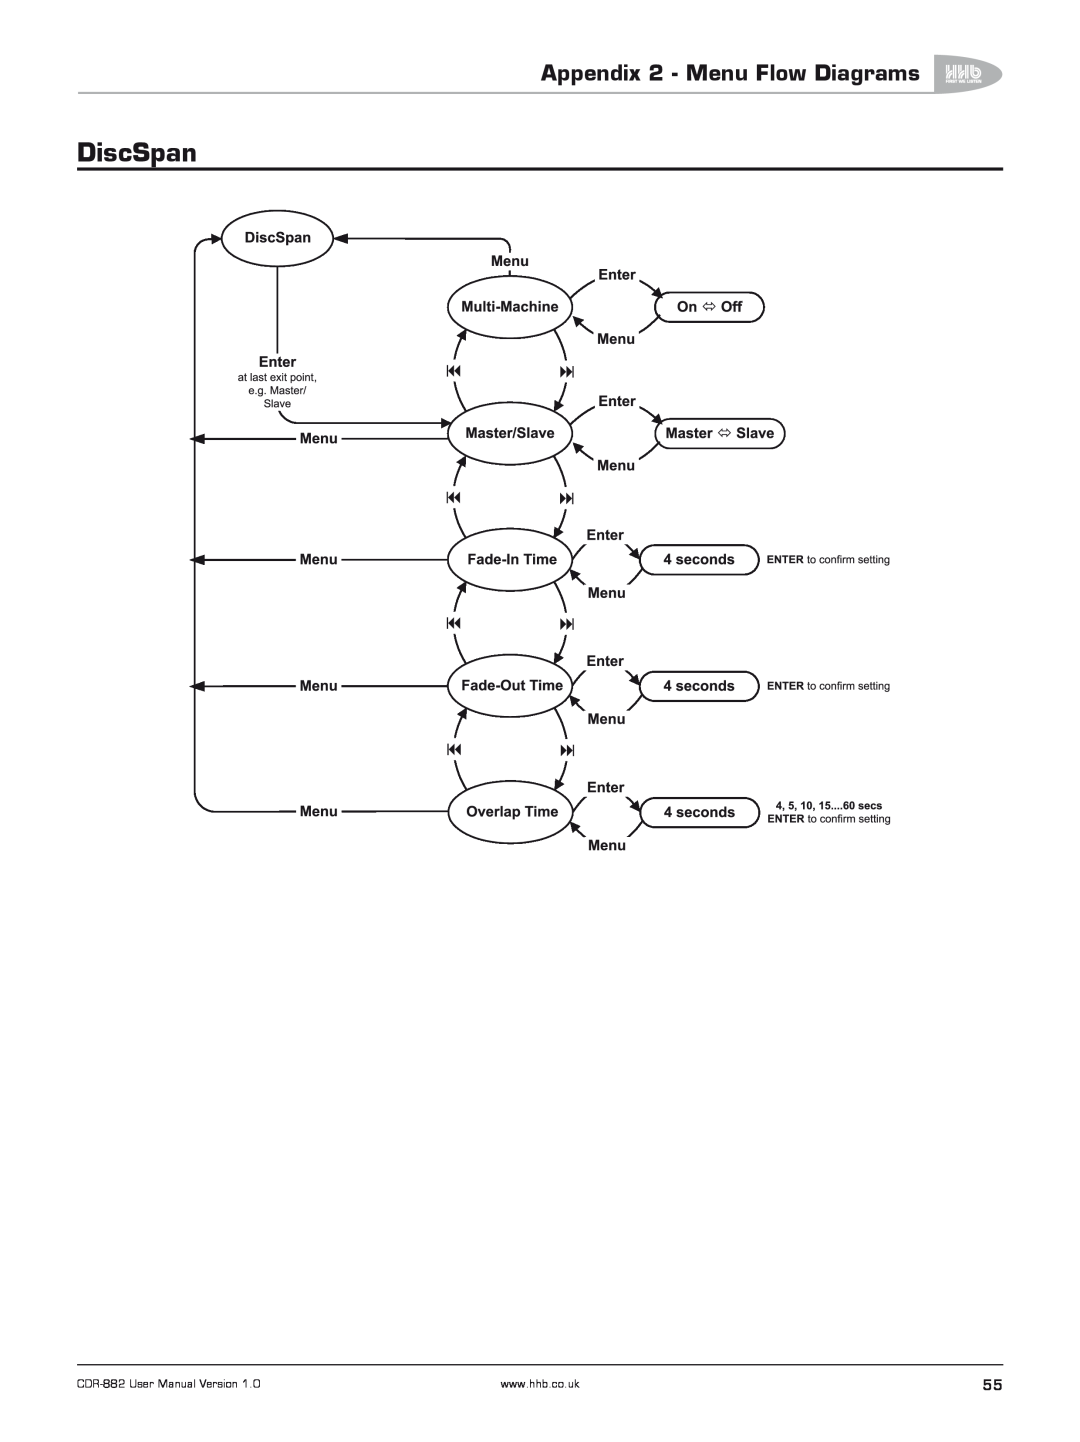 HHB comm CDR-882 user manual DiscSpan, Appendix 2 - Menu Flow Diagrams 